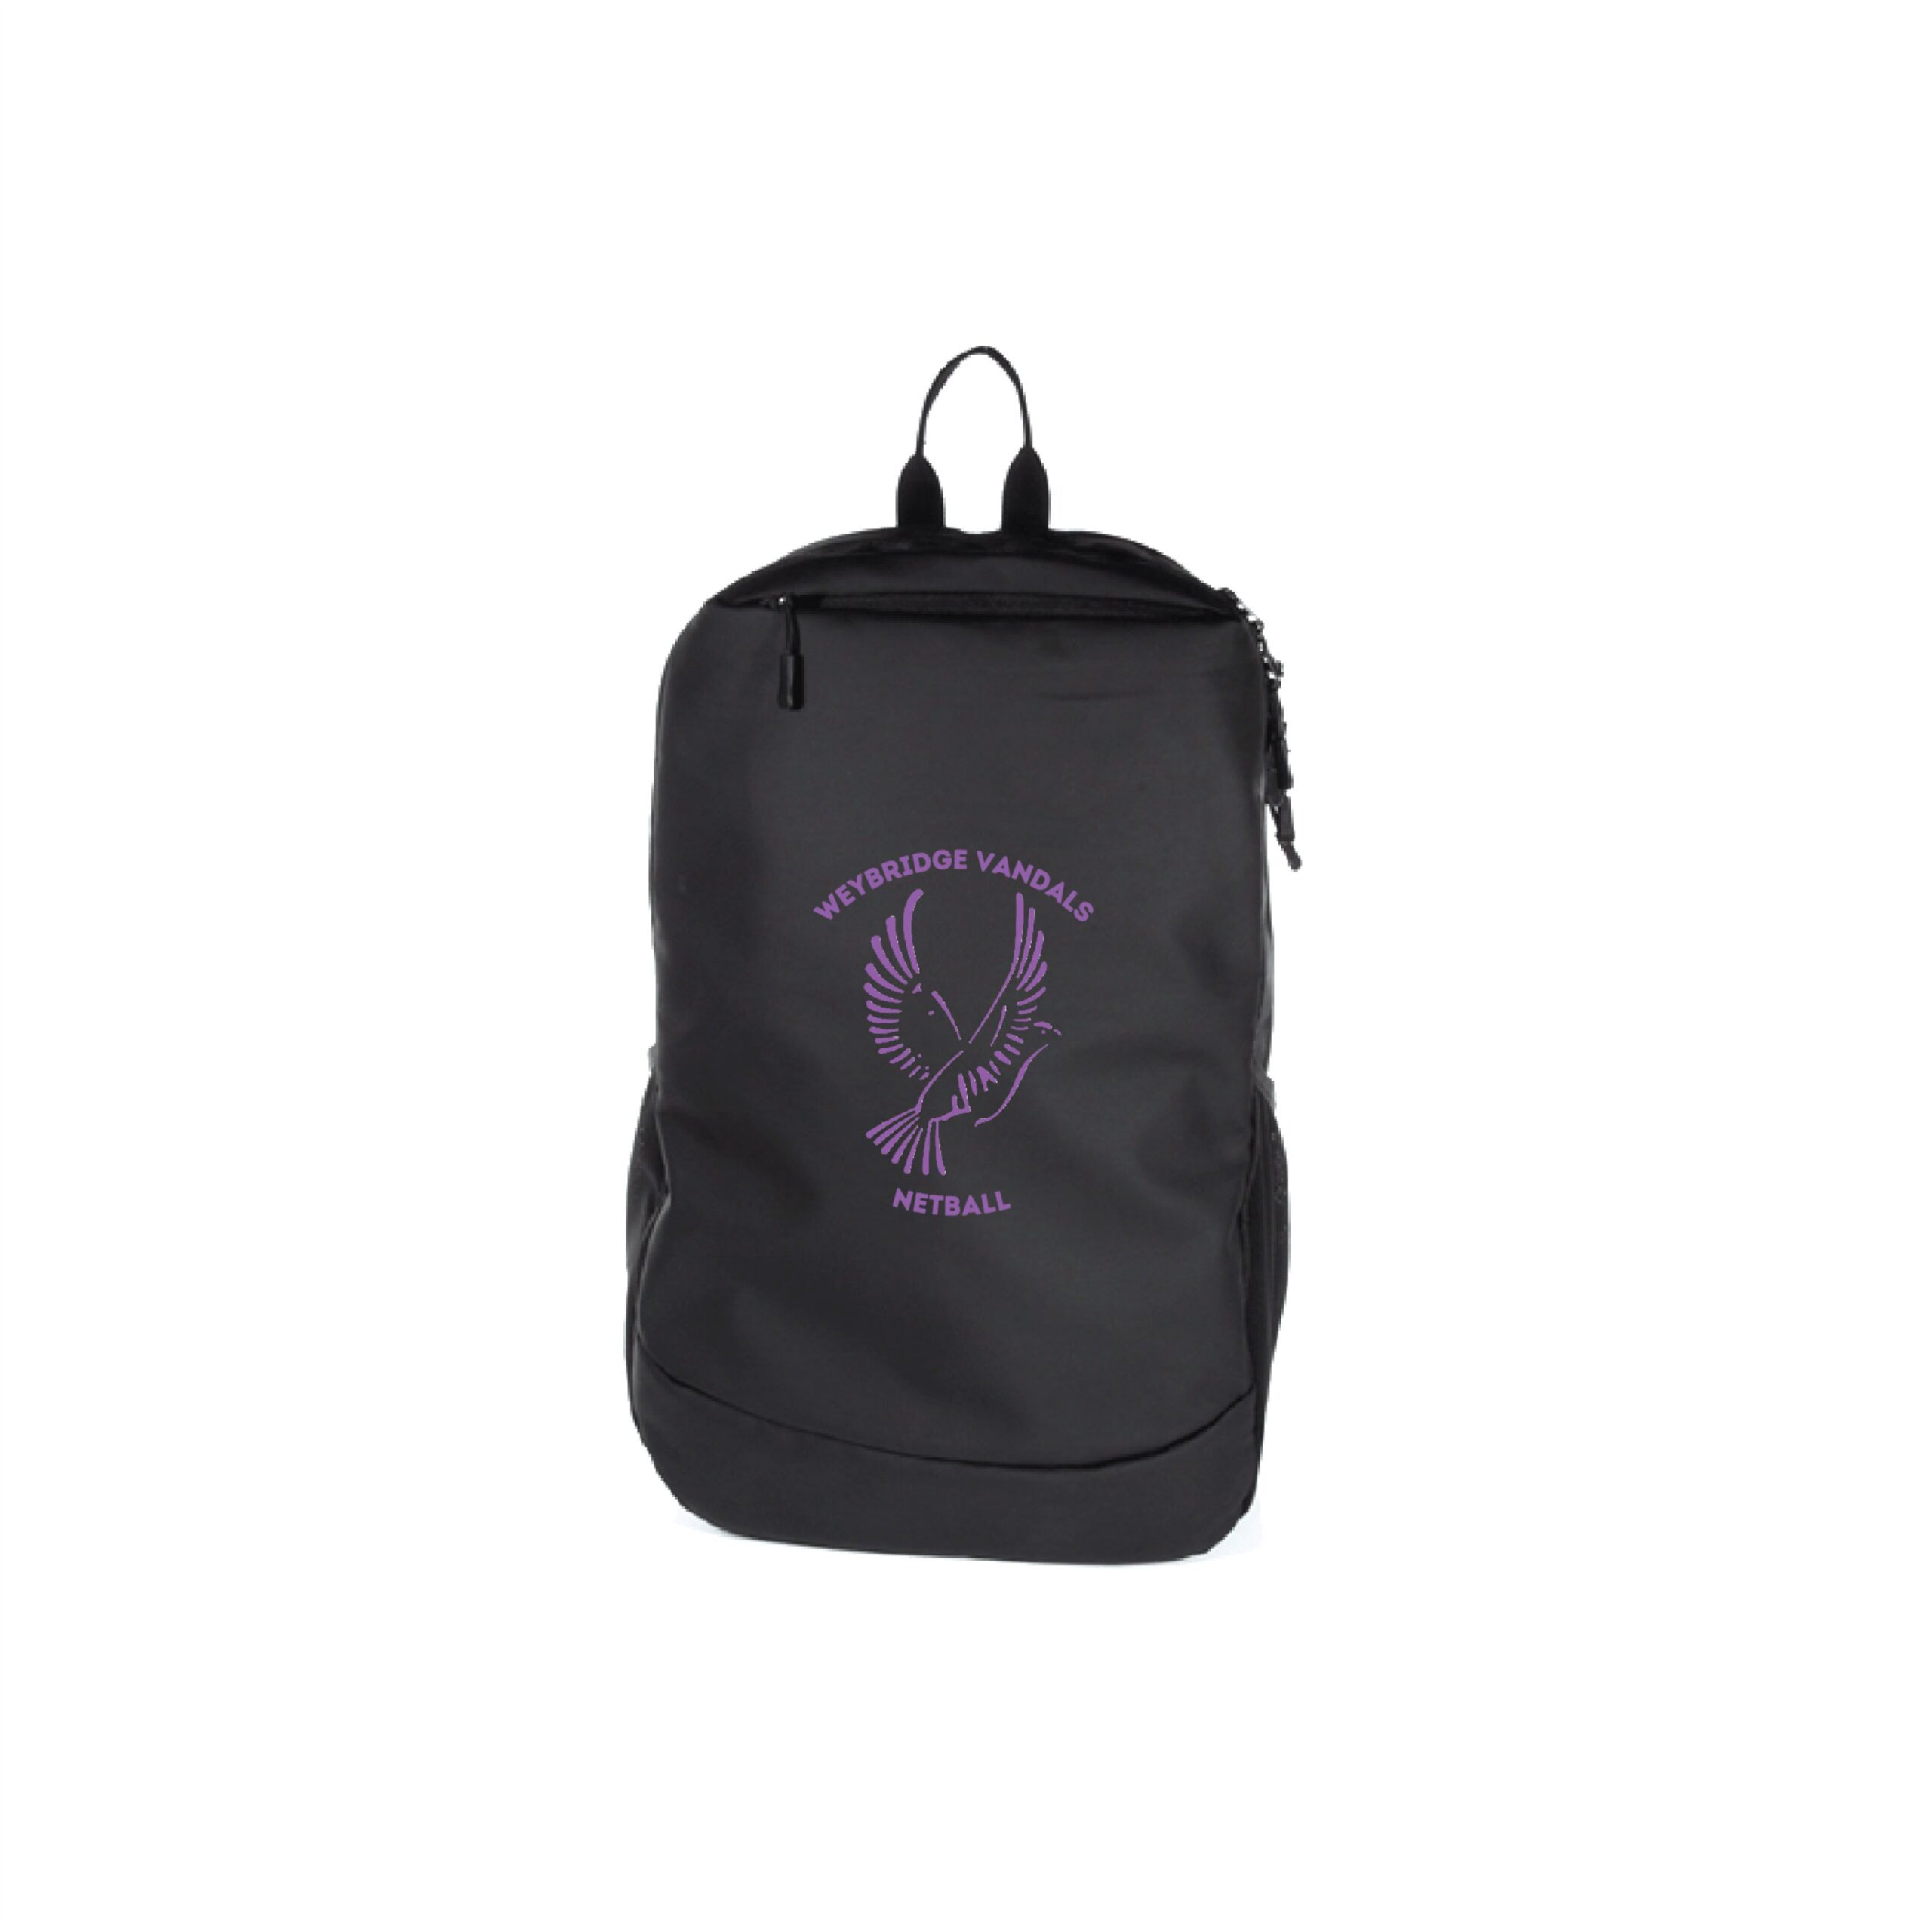 Weybridge Vandals Netball Backpack - Halbro Sportswear Limited